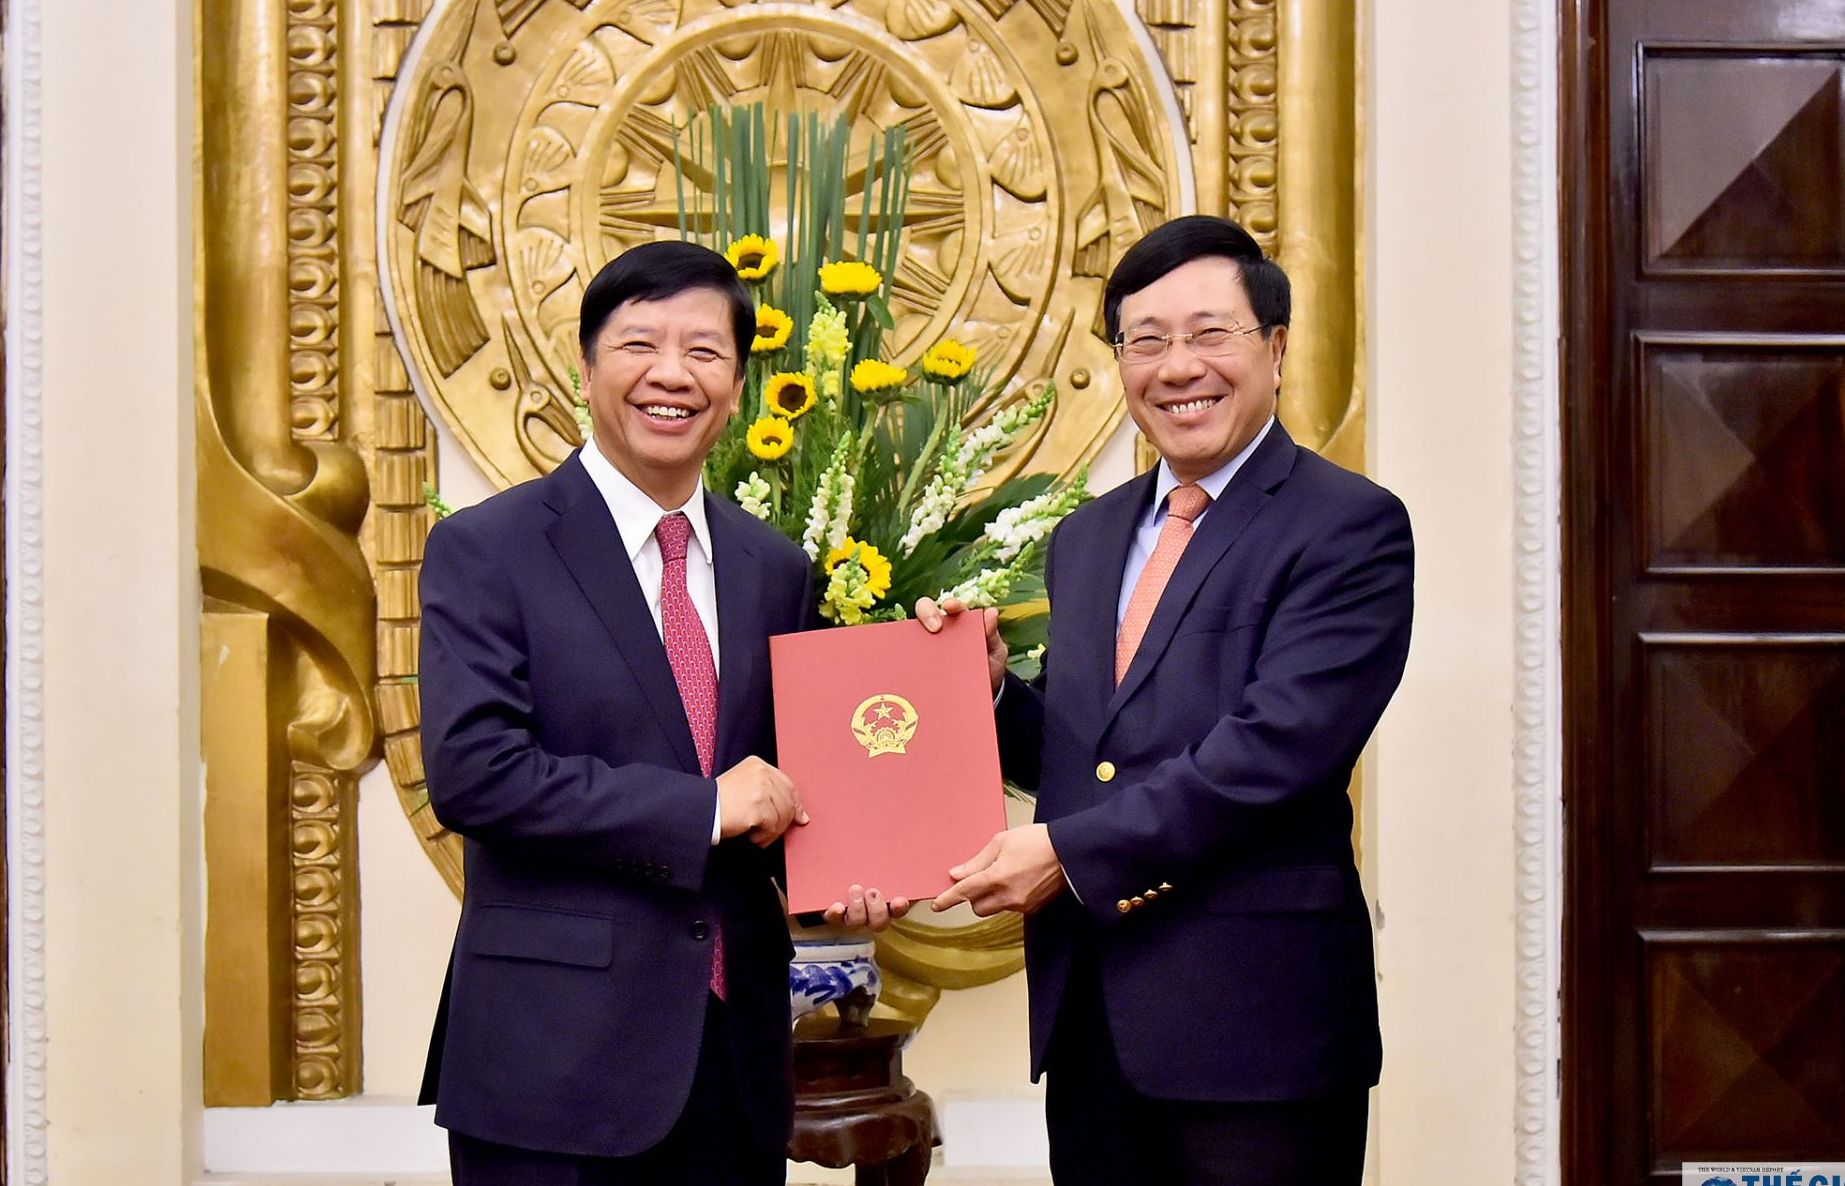 Phó Thủ tướng Phạm Bình Minh trao quyết định nghỉ hưu cho đồng chí Nguyễn Quốc Cường